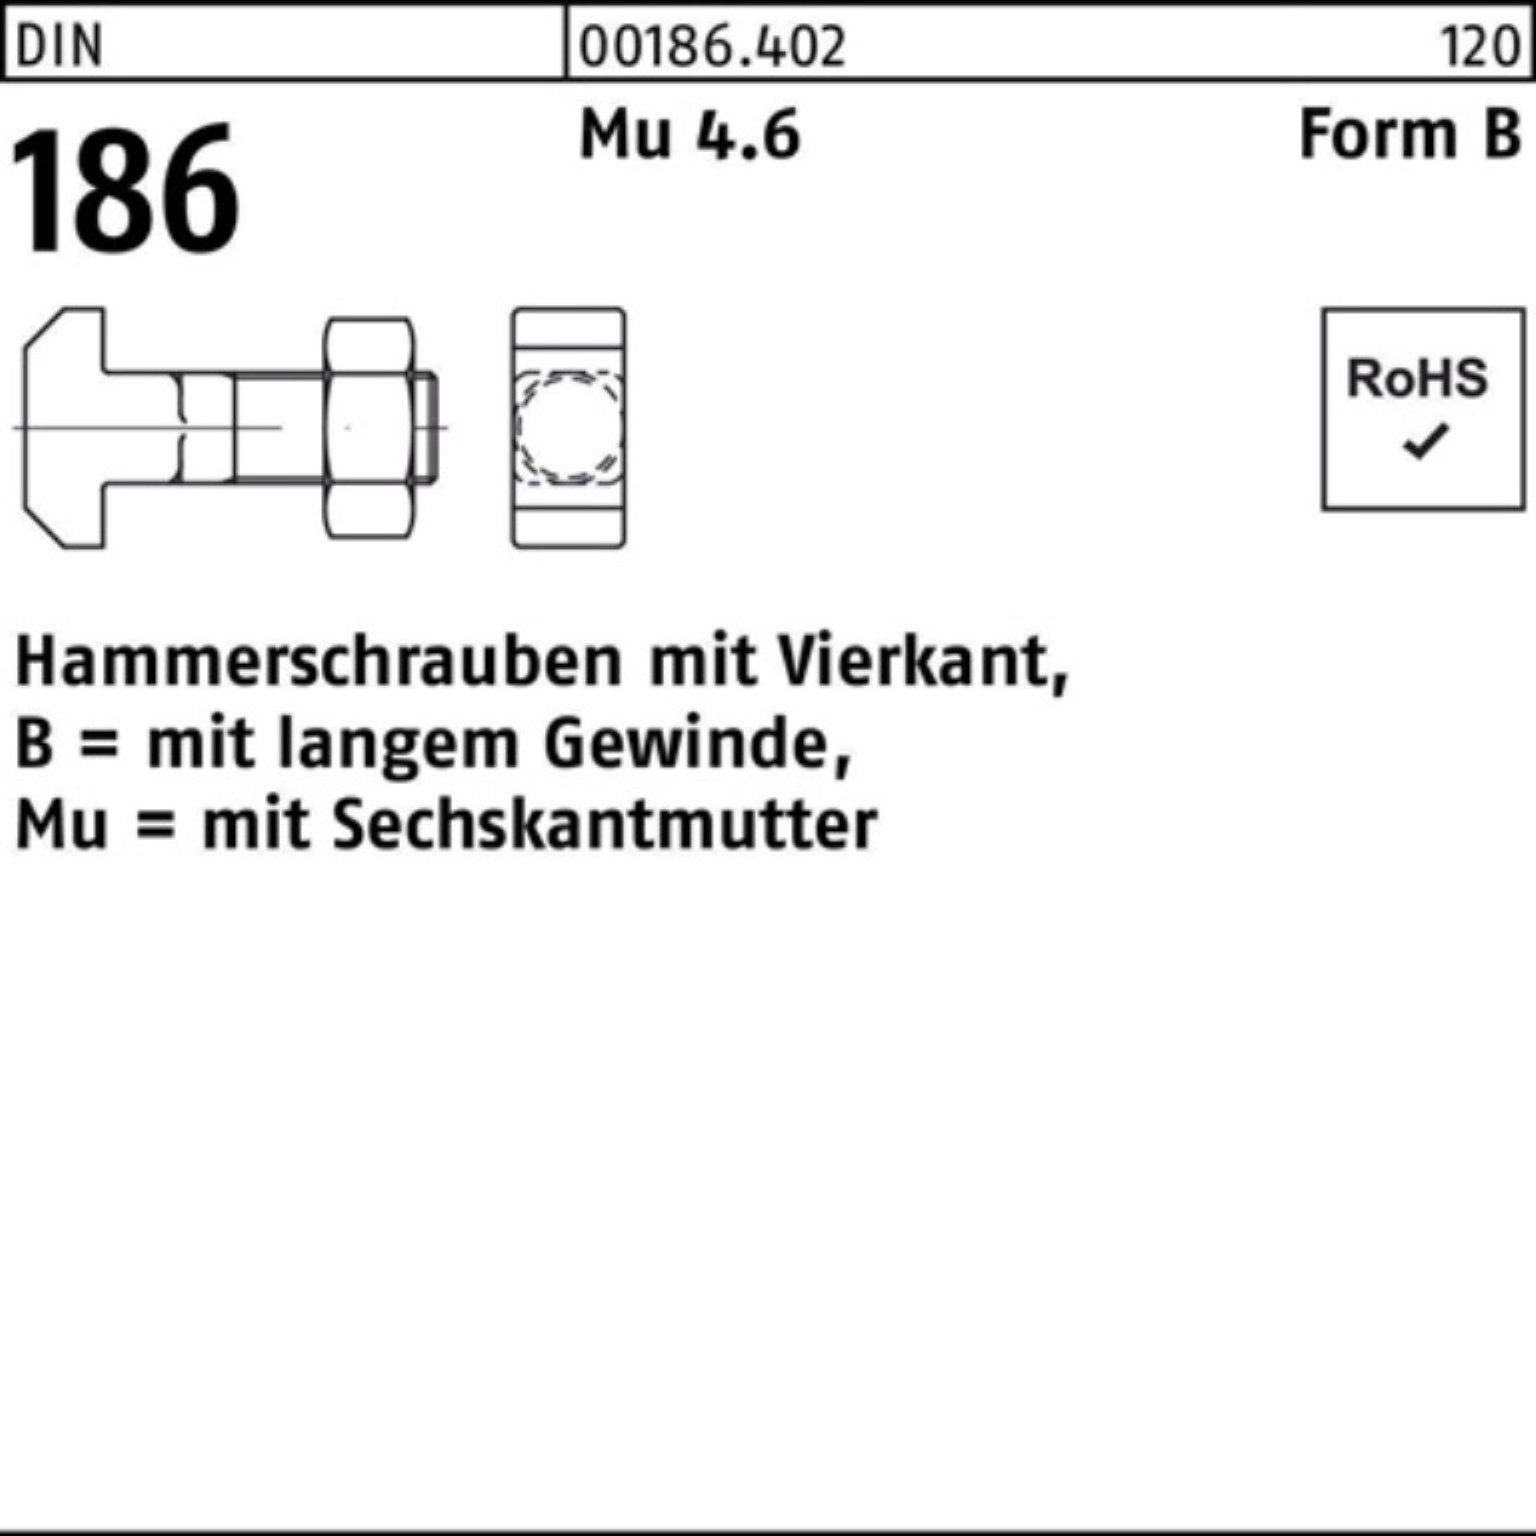 Reyher Schraube 100er Pack Hammerschraube DIN 186 FormB Vierkant 6-ktmutter BM 20x 70